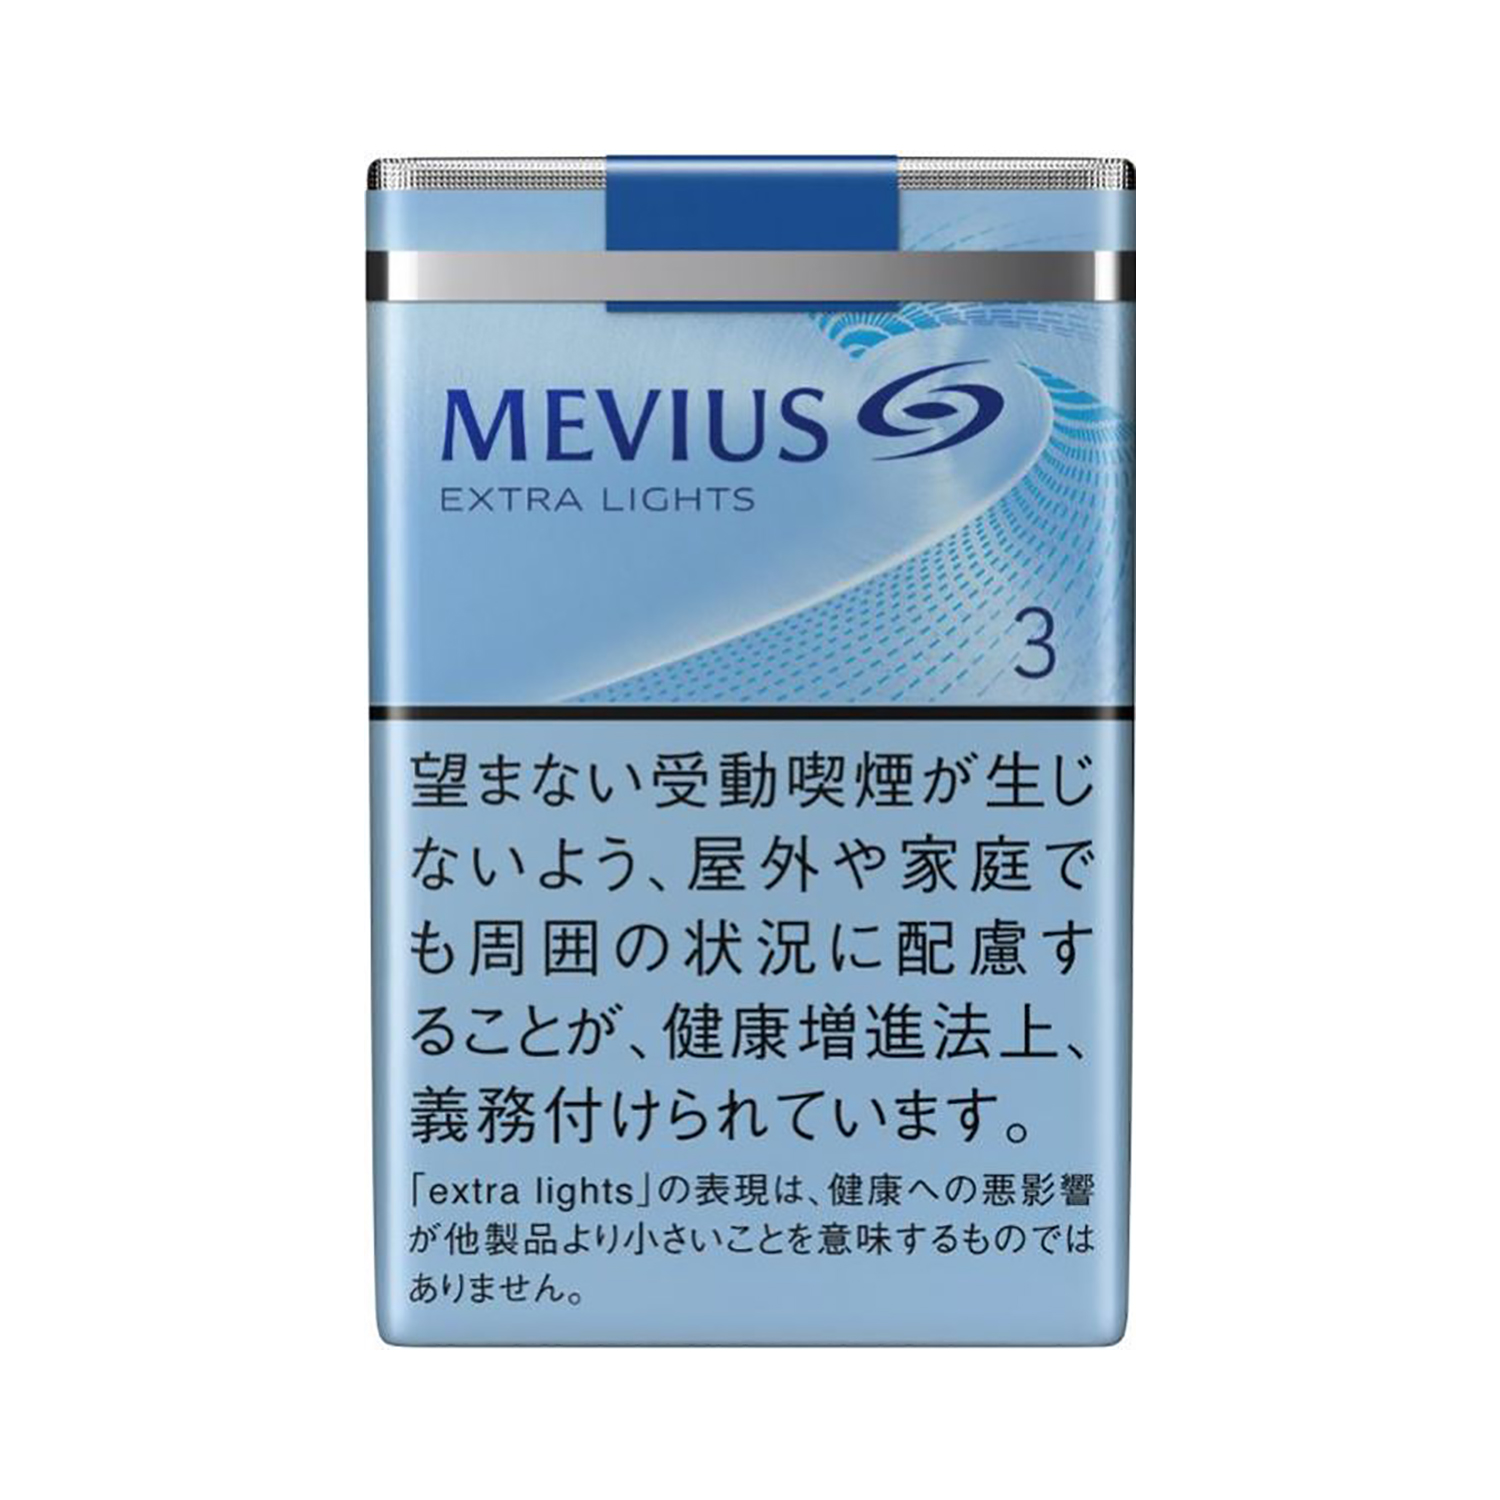 MEVIUS EXTRA LIGHTS/ Tar:3mg Nicotine:0.3mg